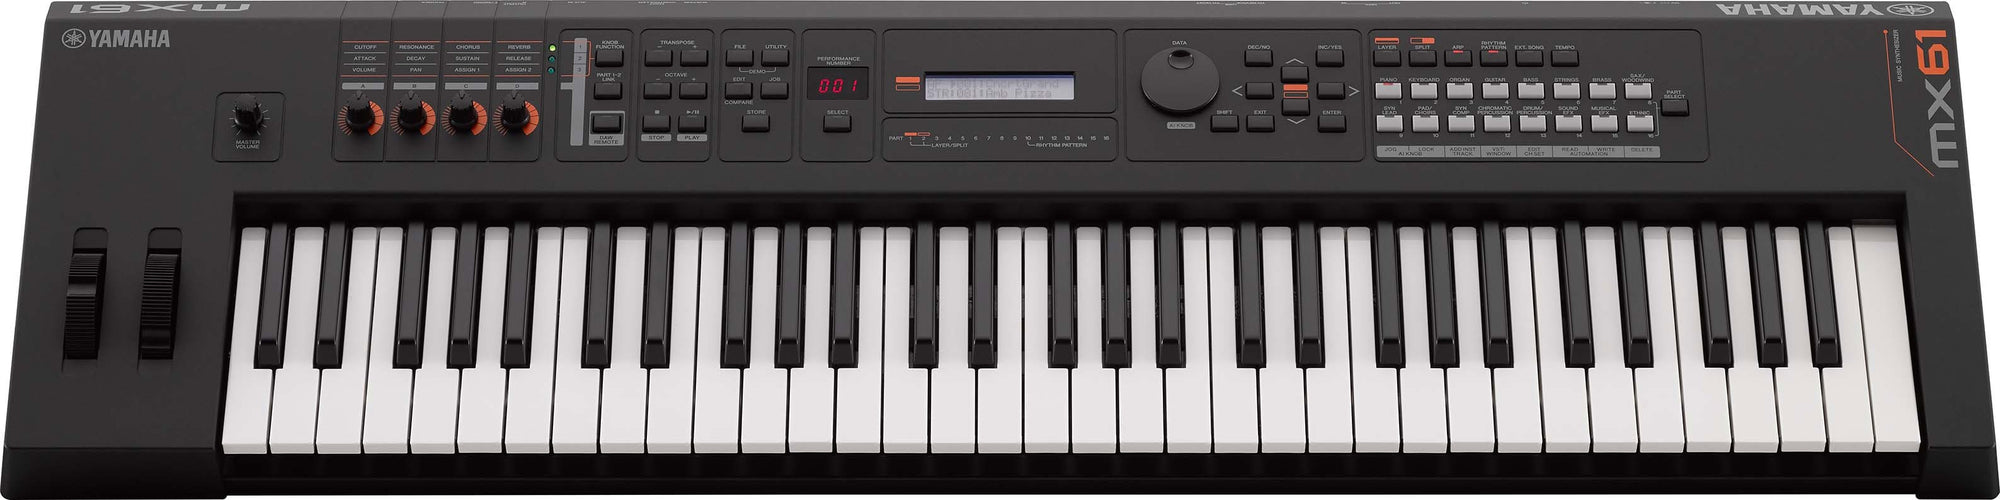 Yamaha MX61 61 Key Portable Synthesizer Yamaha Portable Keyboards